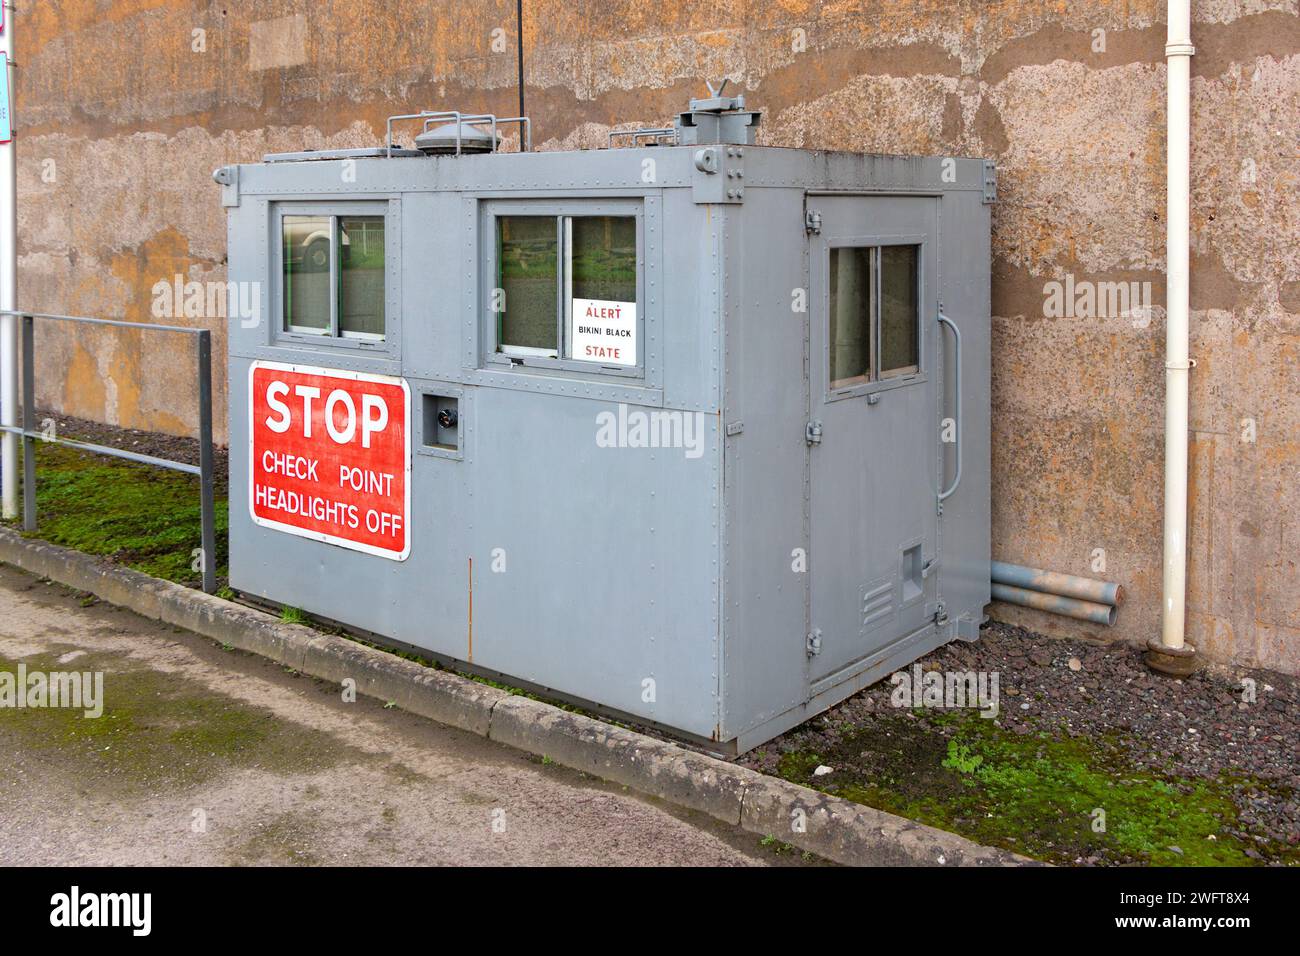 Bâtiment de point de contrôle en acier gris avec signe d'arrêt MOD hack bunker secret vert cheshire, utilisé dans l'abri de souffle nucléaire de guerre froide, poste de commandement maintenant un musée Banque D'Images